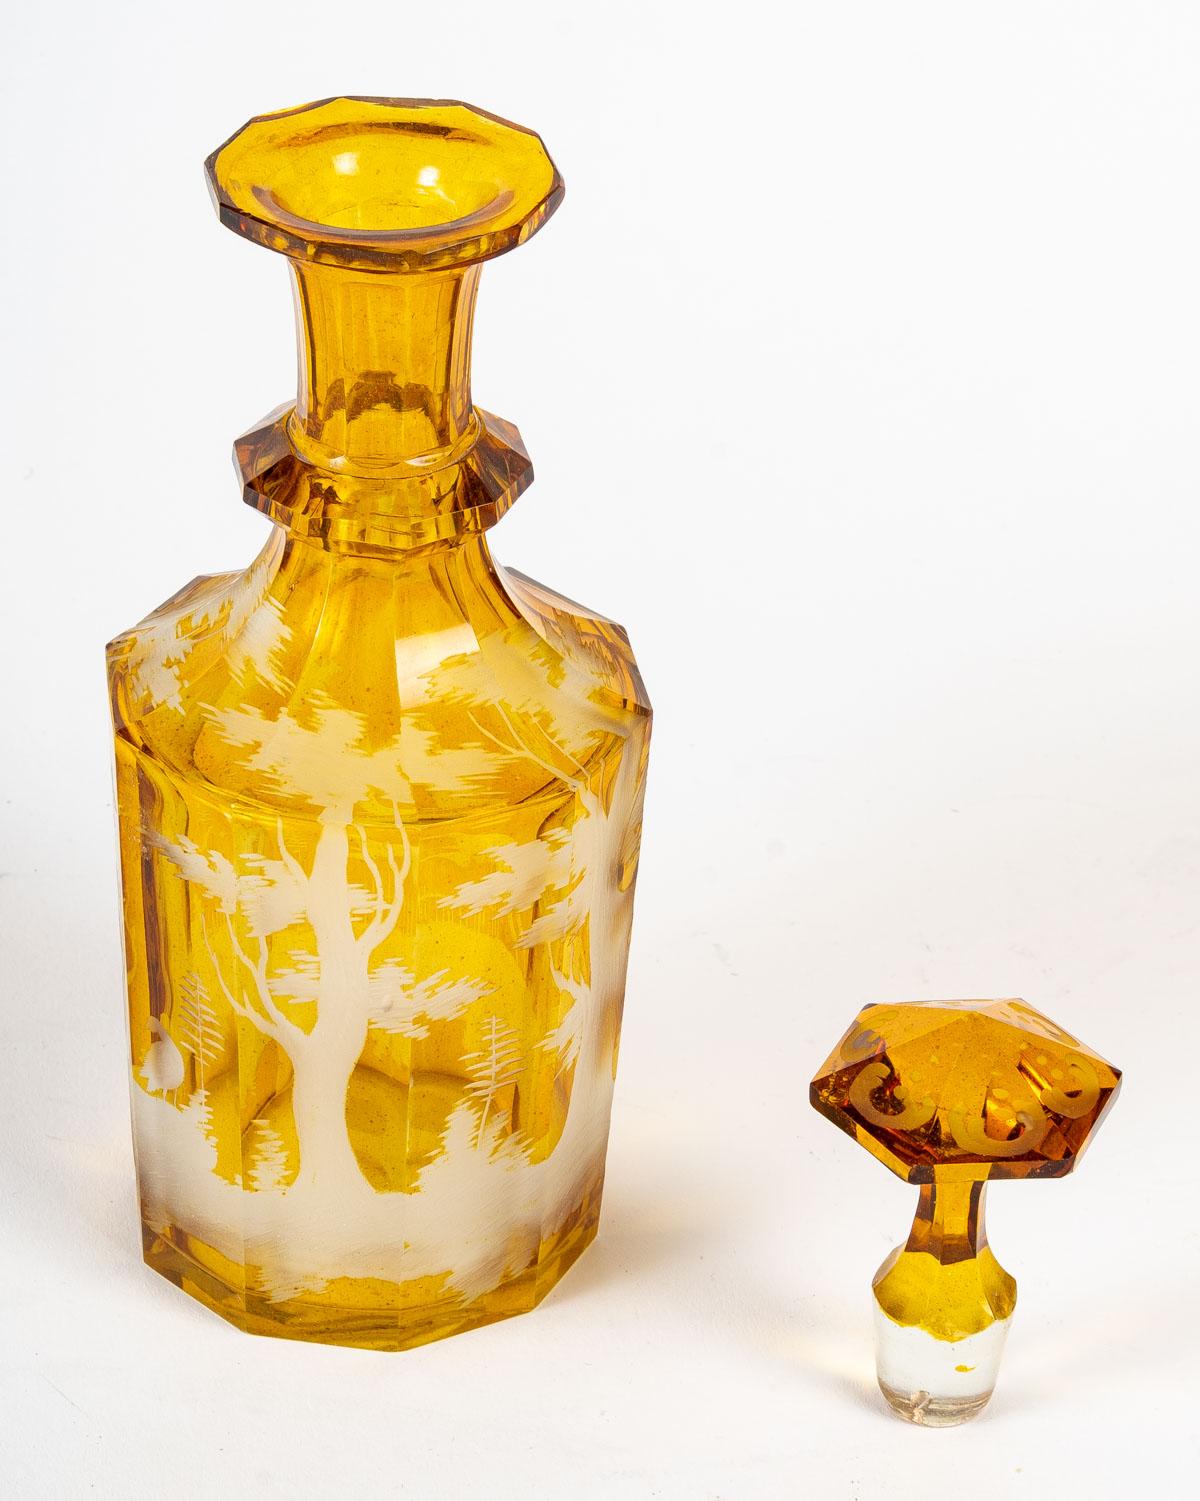 Service en cristal jaune de Bohème, 19e siècle.
Service en cristal de Bohême comprenant un plateau, 6 verres et une carafe, gravé d'une scène de chasse. 19ème siècle.
Mesures : H : 21 cm, L : 38 cm, P : 23 cm
3047